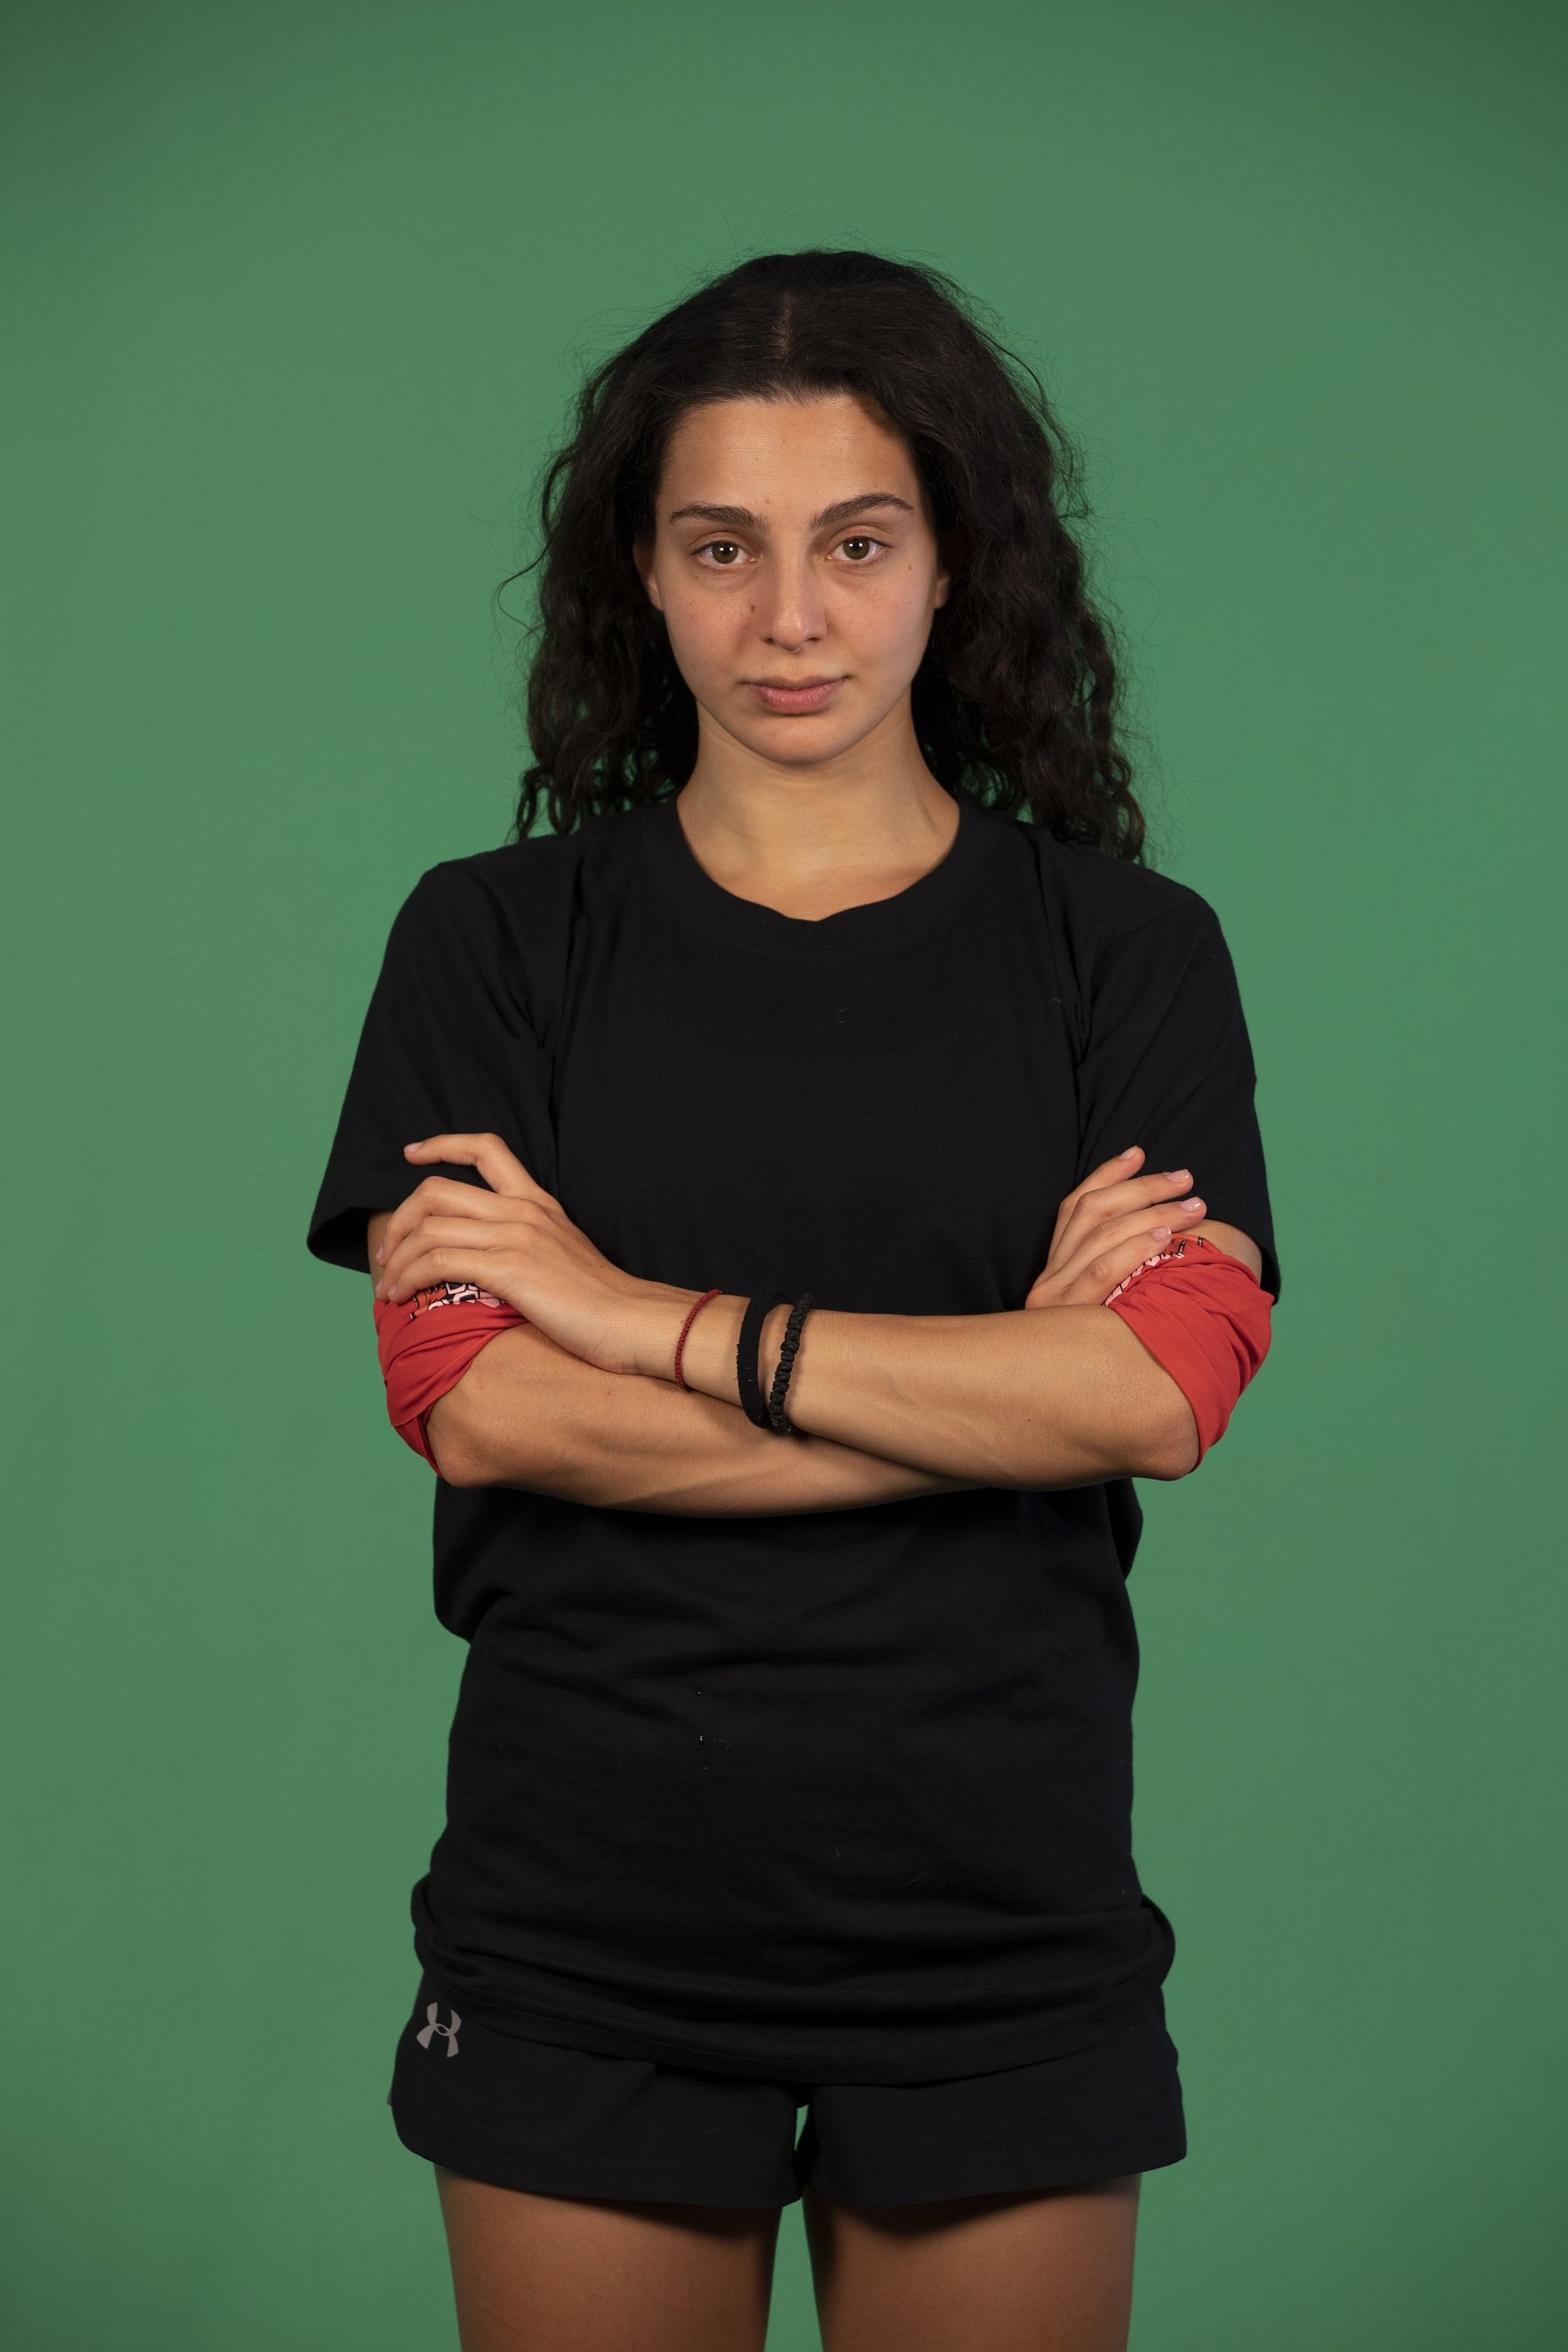 Νικολέτα Μαυρίδη: Η ηλικία, το ύψος της και η γυμναστική